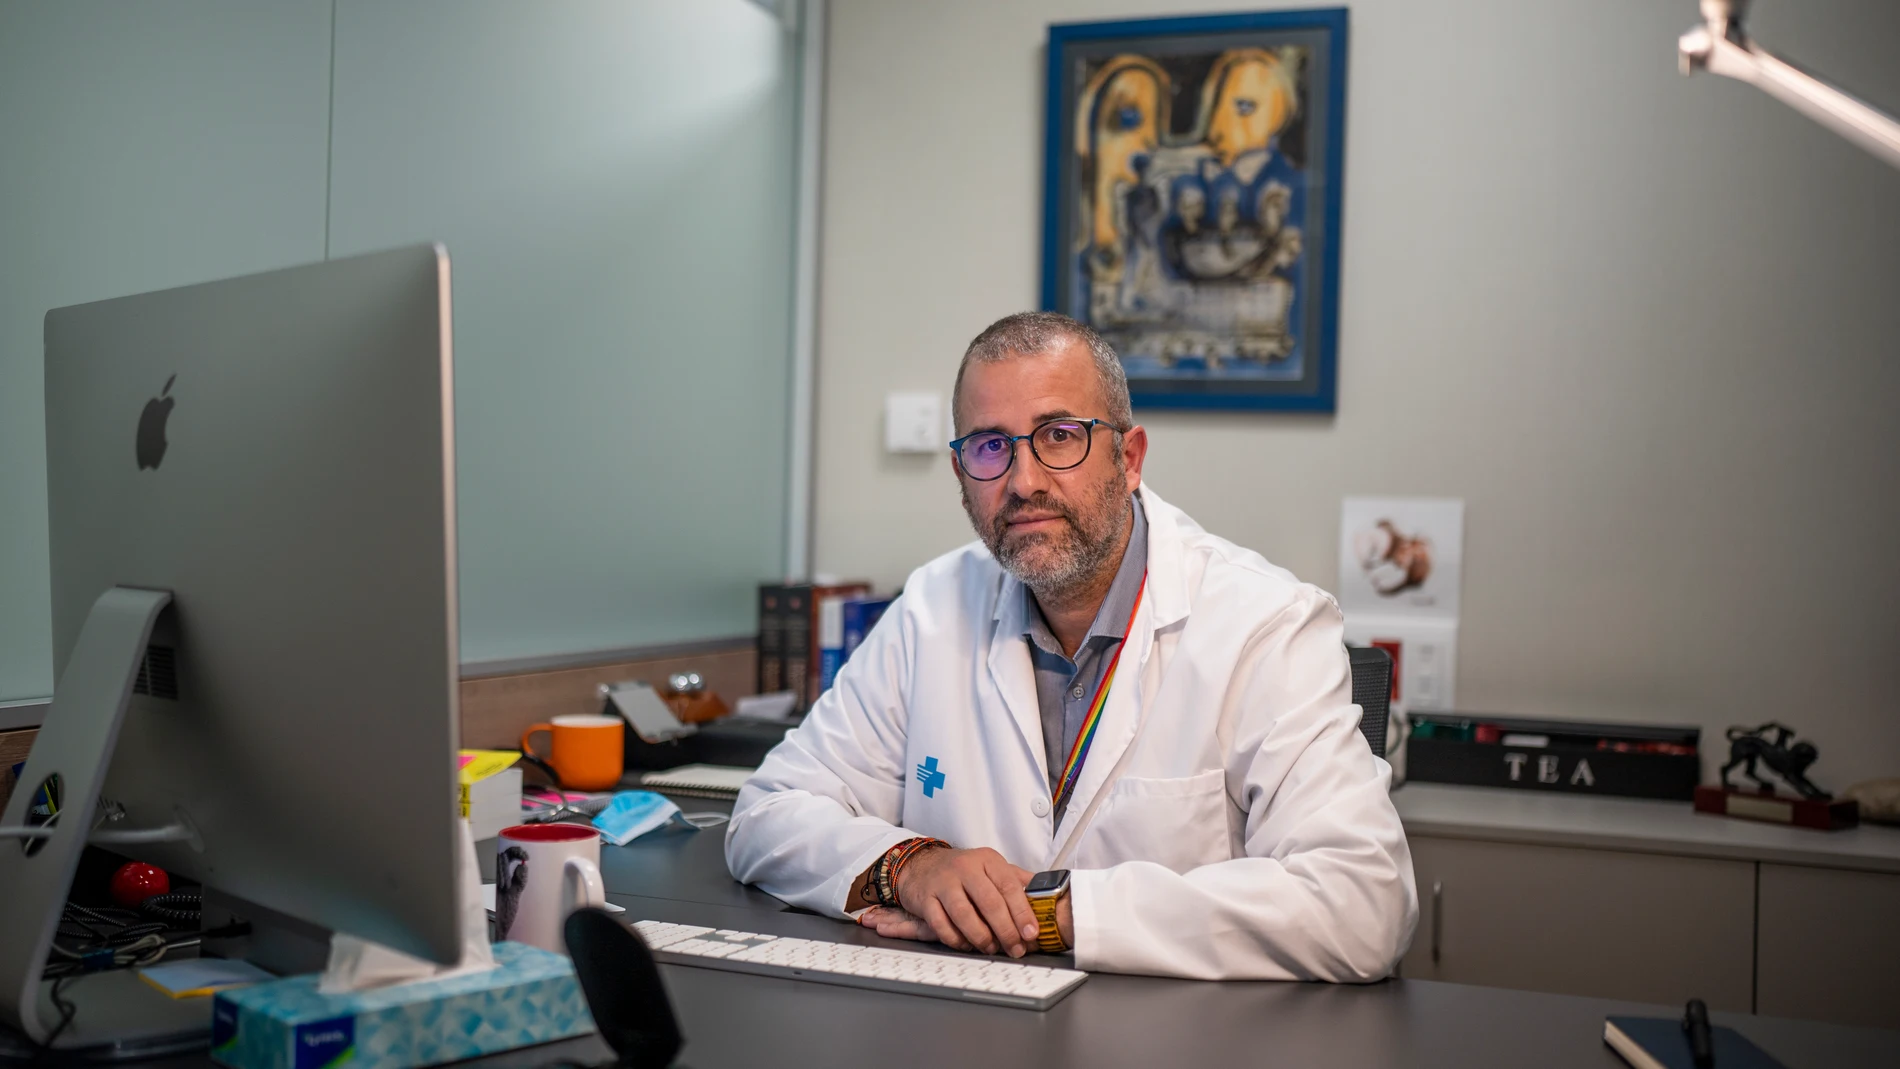 David Valcárcel es jefe de sección y director de la Unidad de Trasplante y Terapia Celular del Servicio de Hematología del Hospital Valle de Hebrón de Barcelona